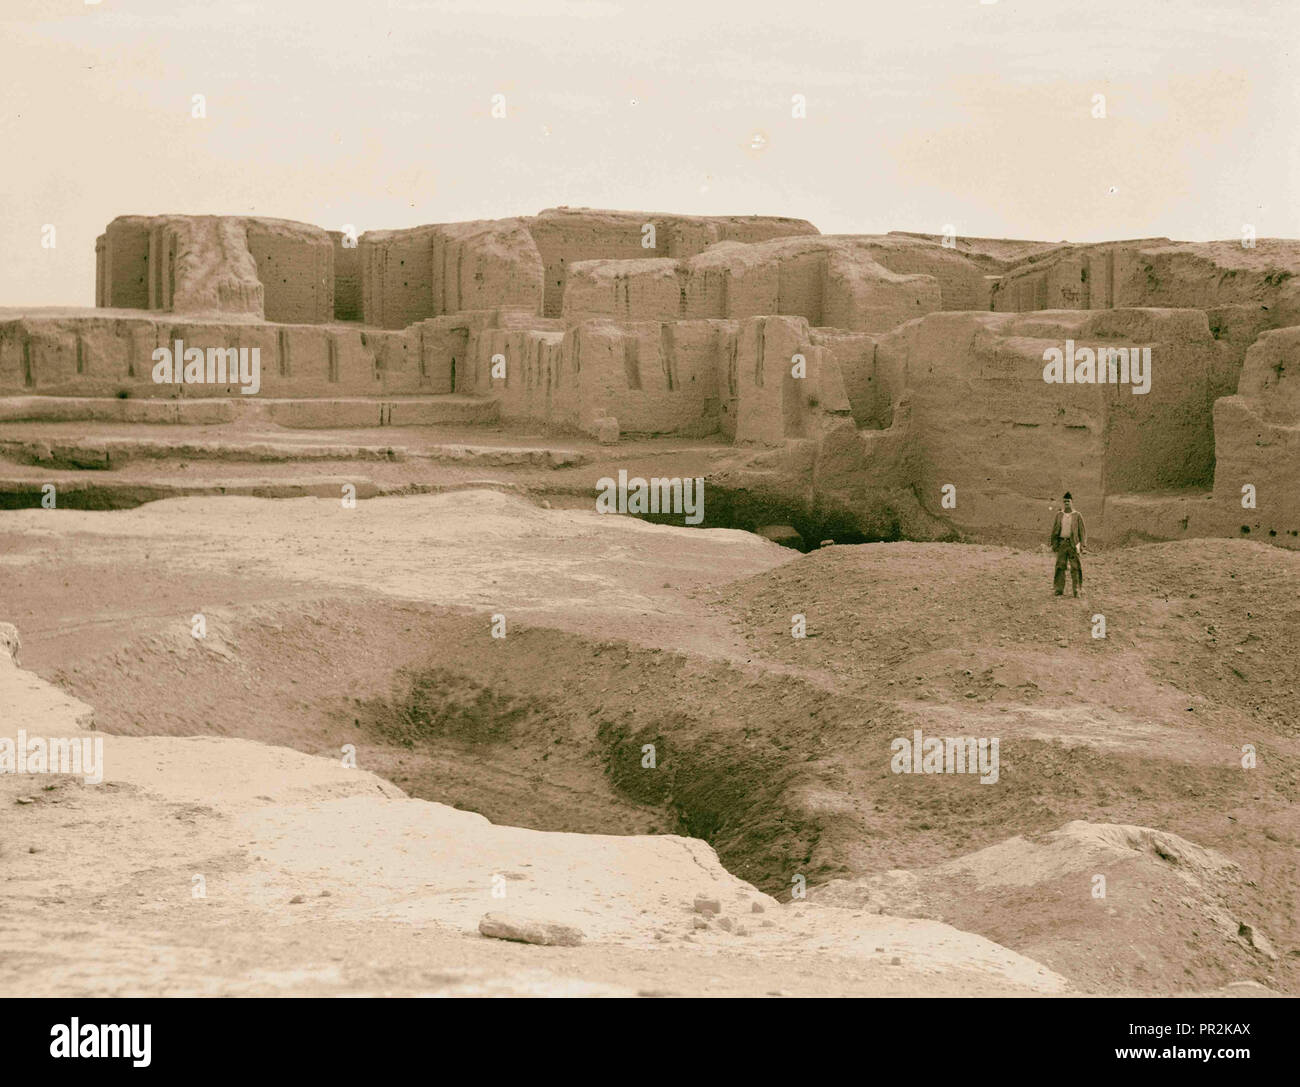 Irak. Kis. (Tel-Uhaimir). Die herrschende Stadt unmittelbar nach der Sintflut. Die antiken Ruinen. 1932, Irak, Kis Stockfoto